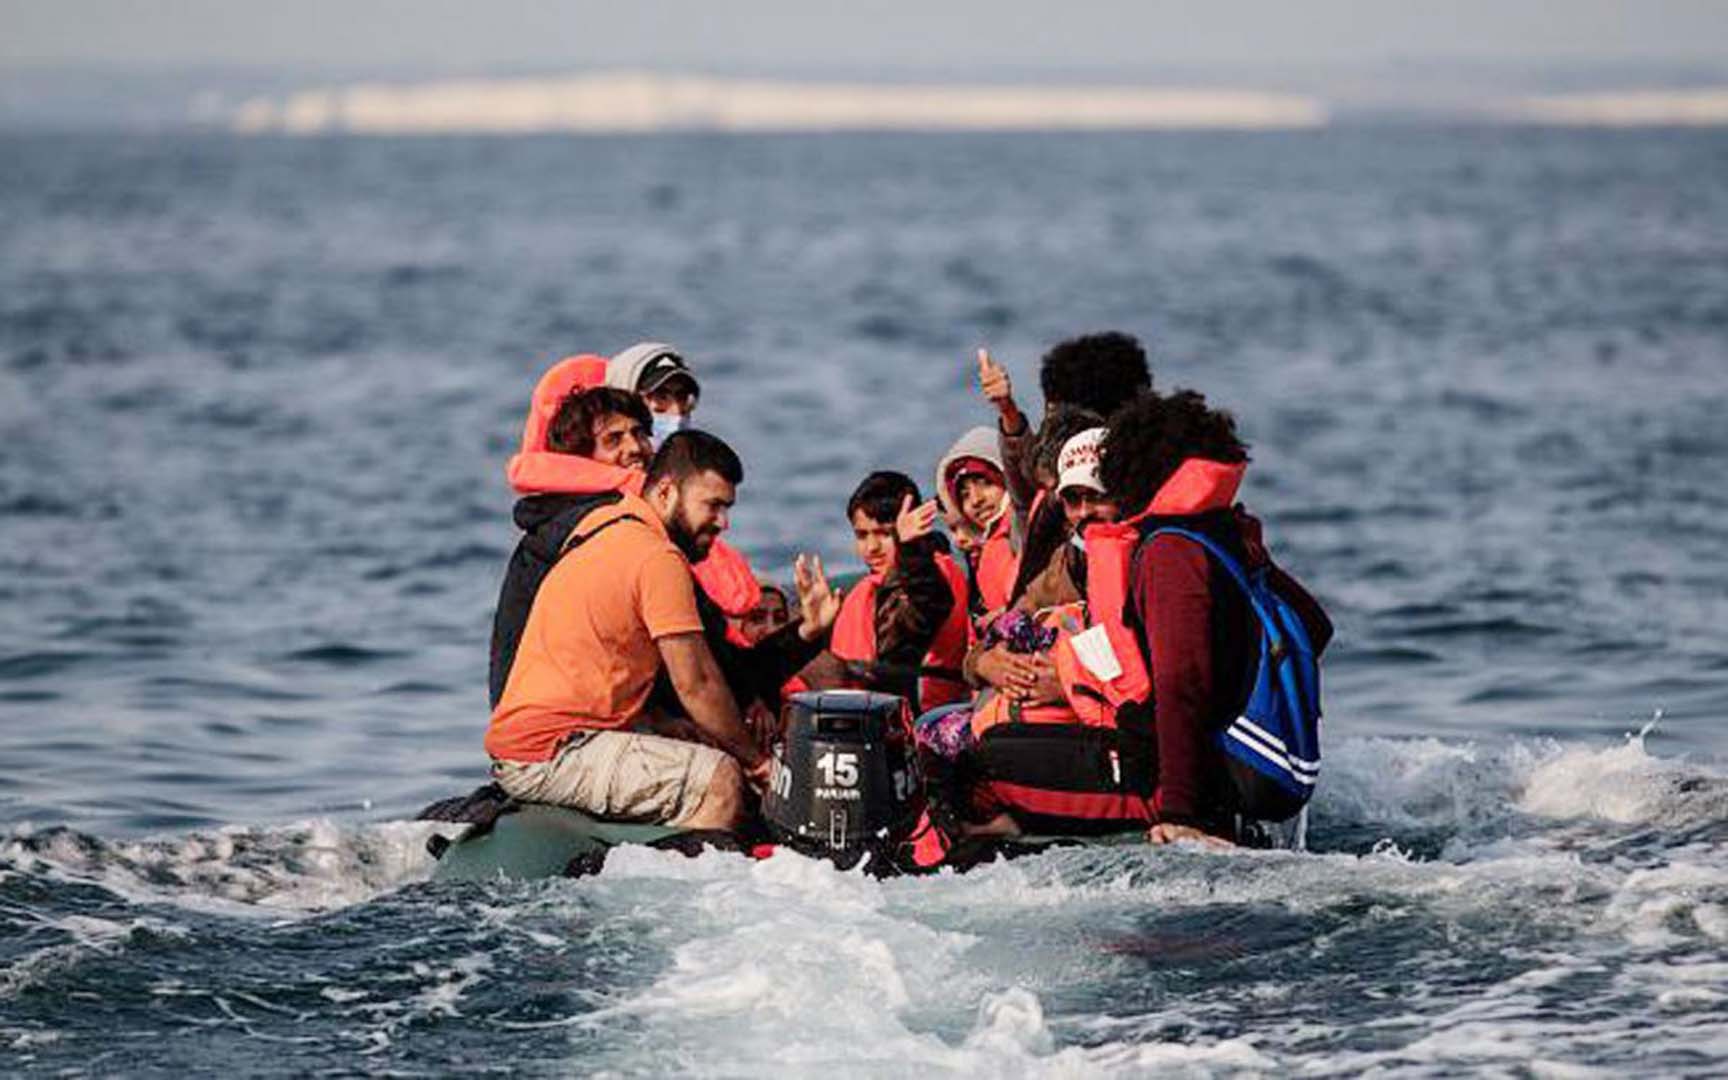 Çanakkale açıklarında 44 düzensiz göçmen kurtarıldı